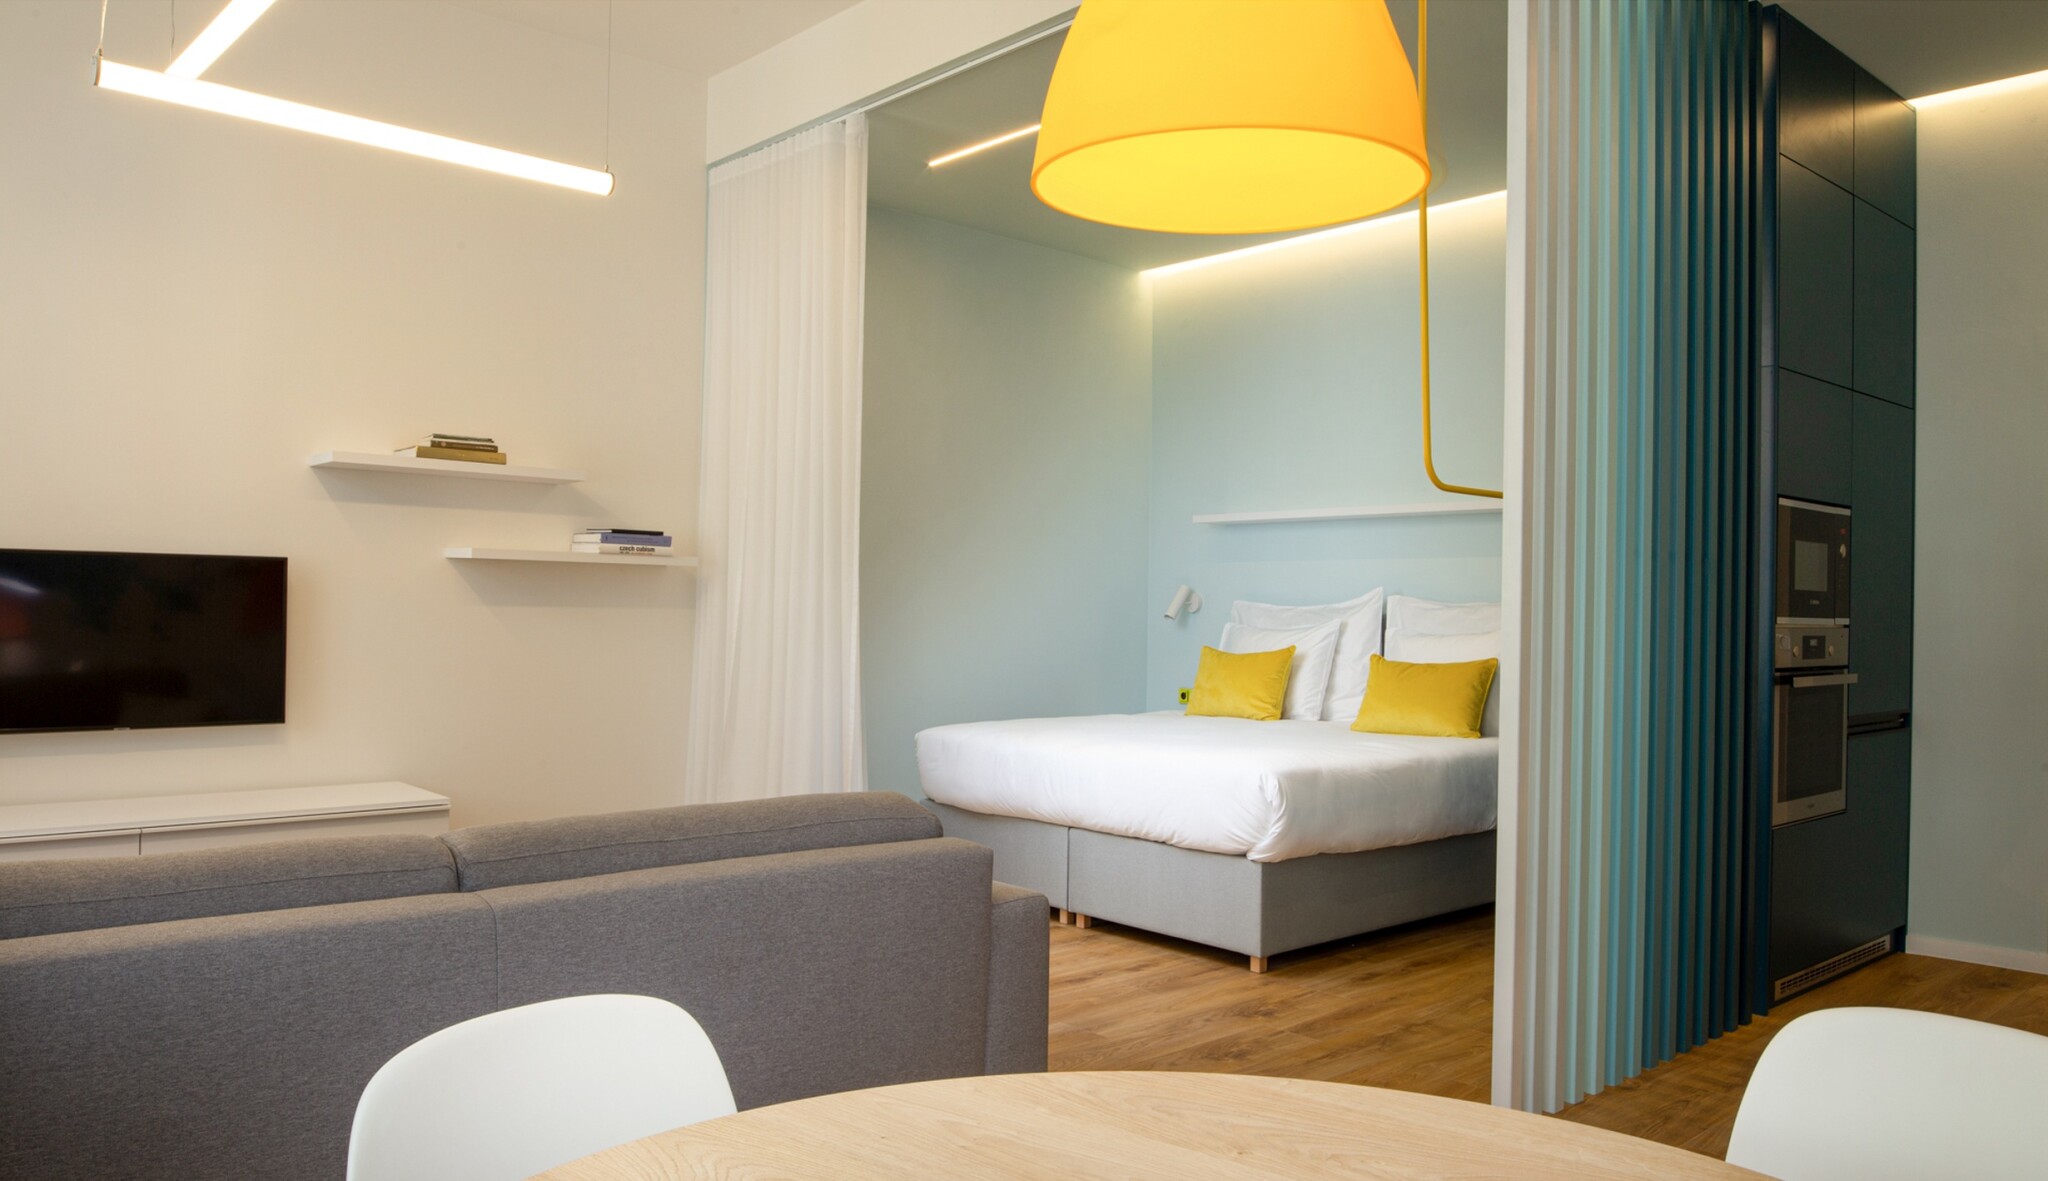 Luxus hotelu, výhody bytu. Společnost Orea spustila nový koncept v centru Prahy